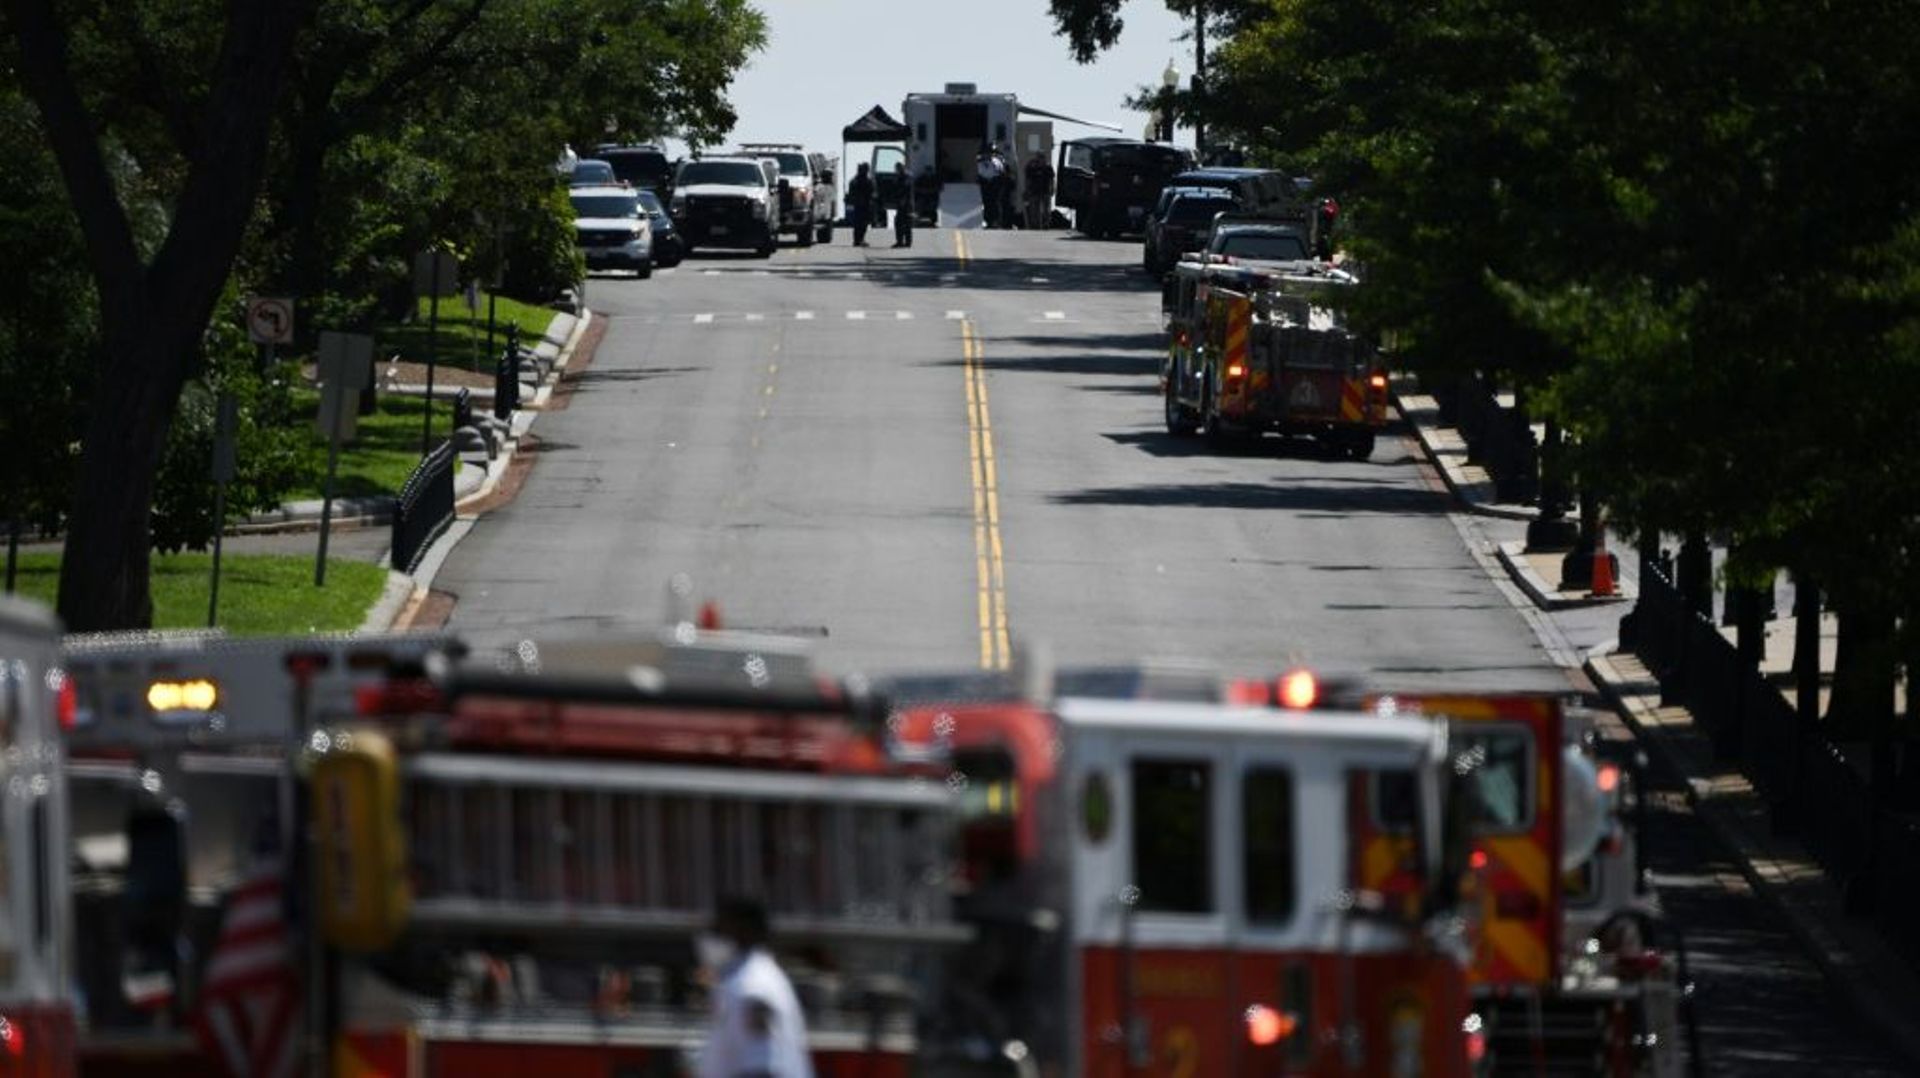 Des véhicules de pompiers et de police près du Capitole où un véhicule est suspecté de contenir des explosifs, le 19 août 2021 à Washington